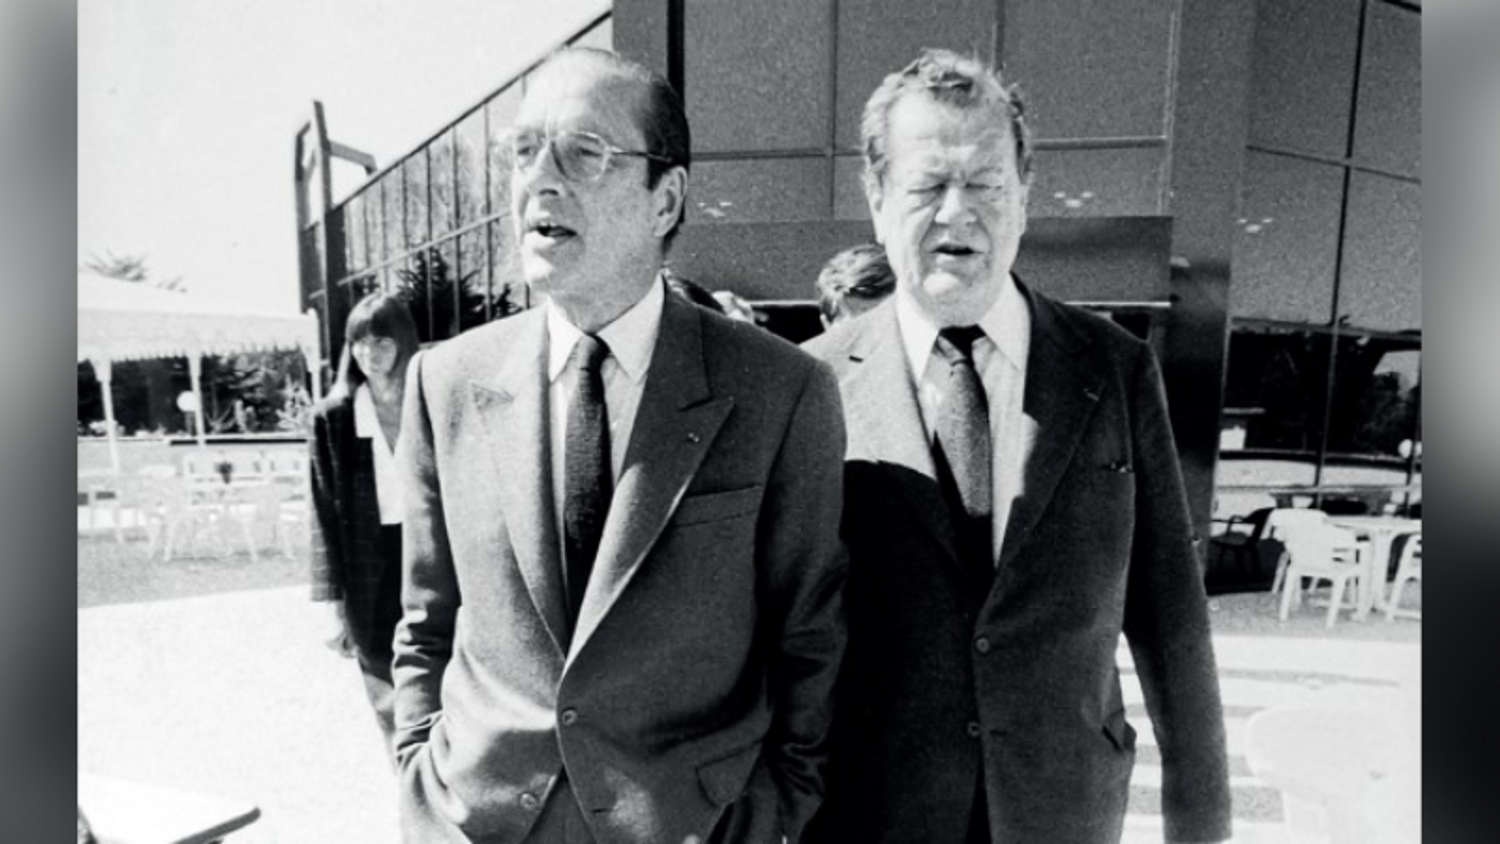 Jacques Chirac et Olivier Guichard à l'inauguration d'Atlantia (1987)